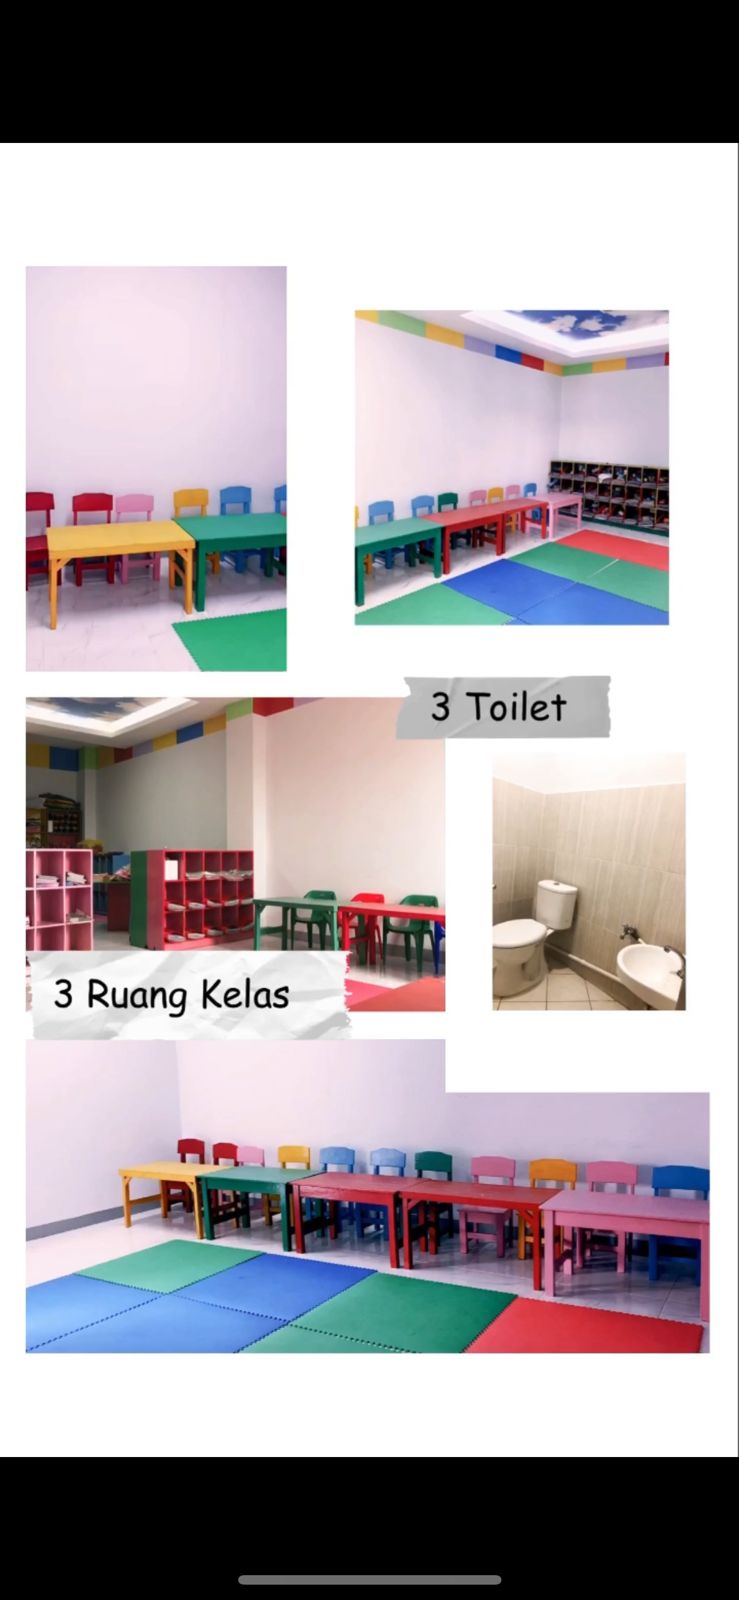 lantai 2 area kelas dan toilet kelas